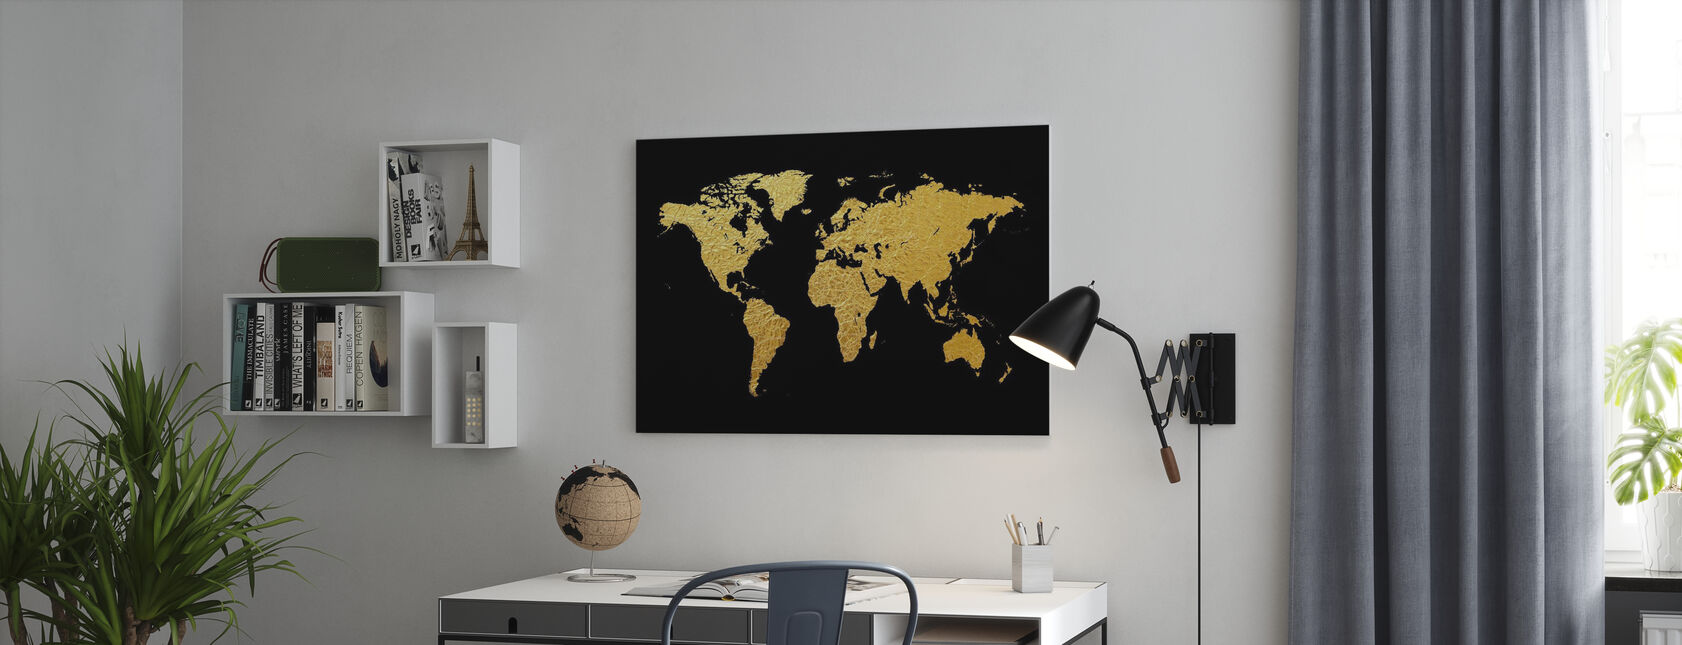 Guldvärldskarta med svart bakgrund - Canvastavla - Kontor